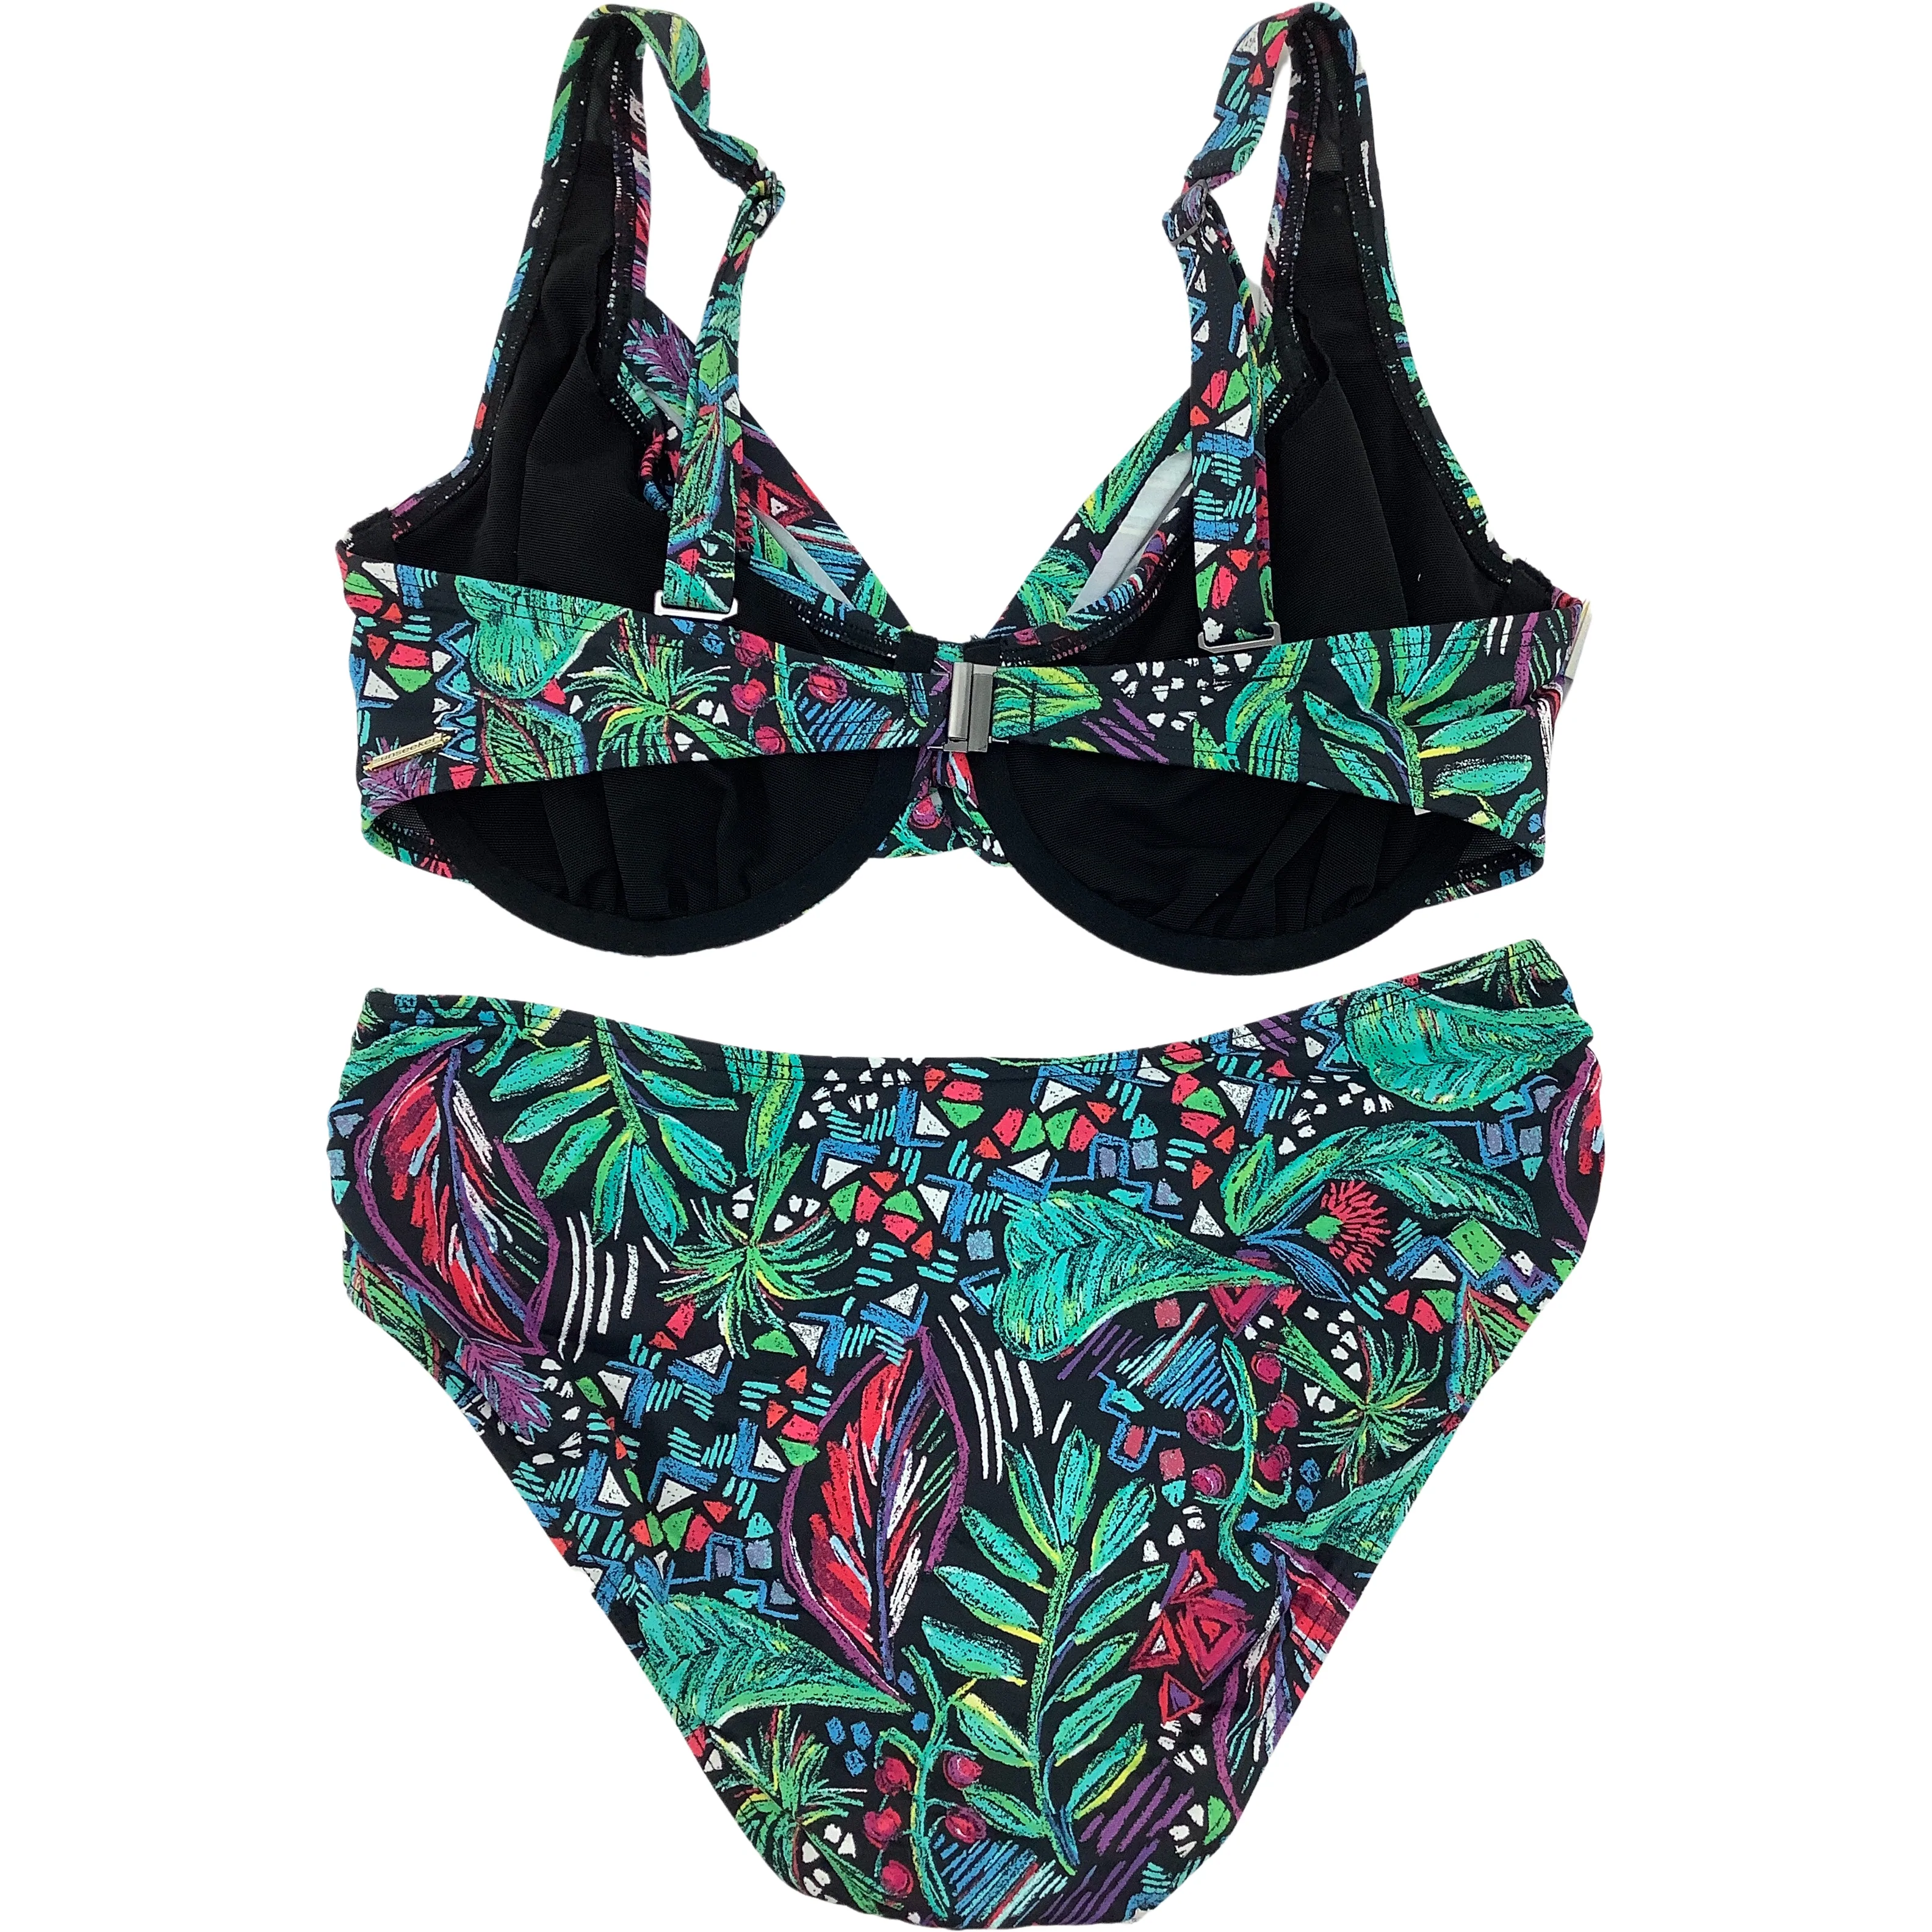 Sunseeker Women's Bathing Suit / Bikini Style Swim Suit / Multicolour / Size 12